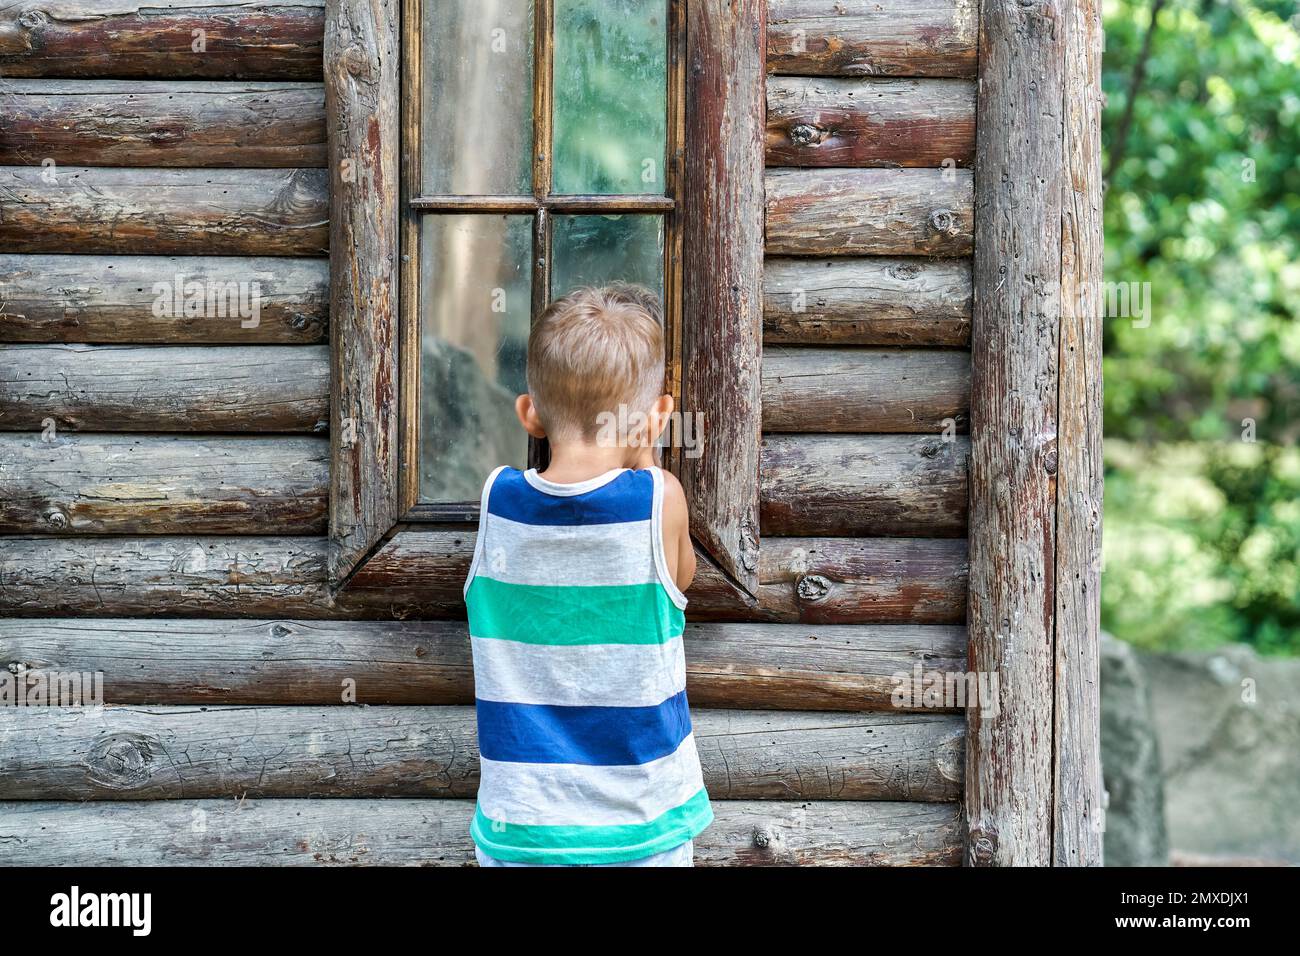 Aufgeregter Vorschuljunge schaut in das Fenster des alten Holzhauses. Ein neugieriges Kind sieht sich Reflexionen auf Fensterglas an und möchte das Reiseziel erkunden Stockfoto